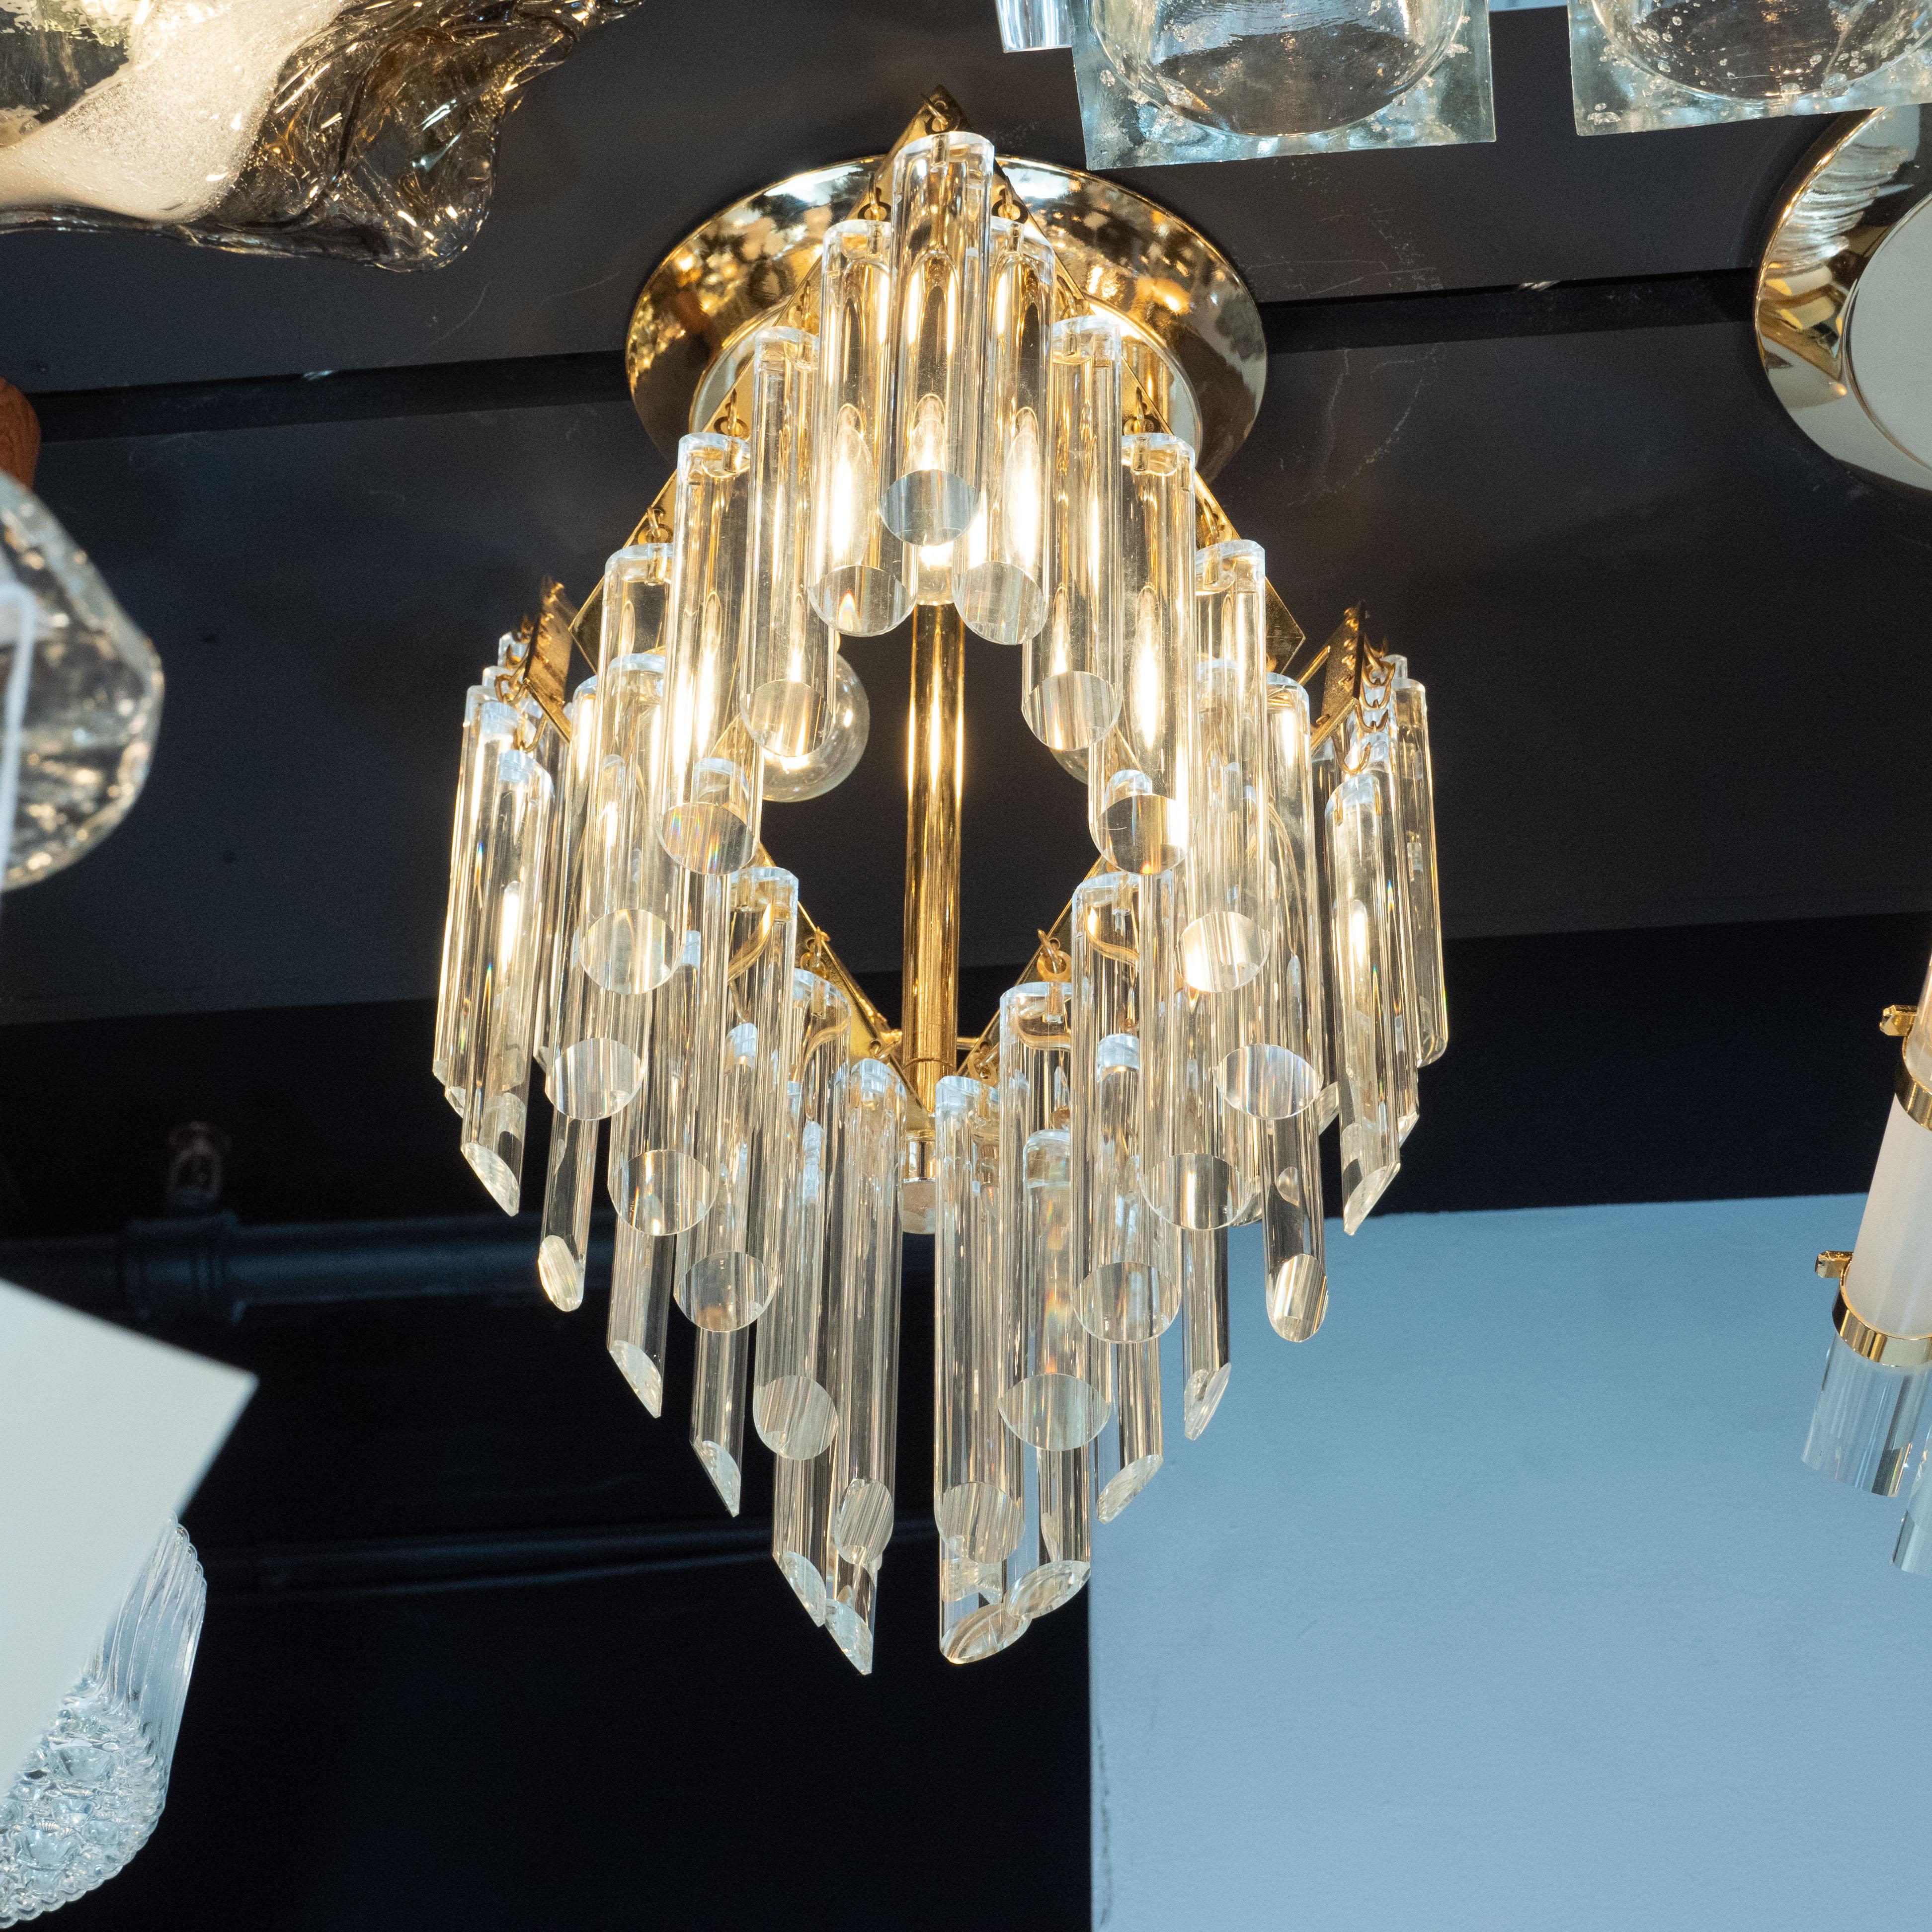 Dieser atemberaubende Kronleuchter wurde von der ehrwürdigen österreichischen Glasmanufaktur J. & L. Lobmeyr um 1970 hergestellt. Die Leuchte hängt an einem runden, abgestuften Sockel und besteht aus einer zentralen Messingstange, an der drei nach